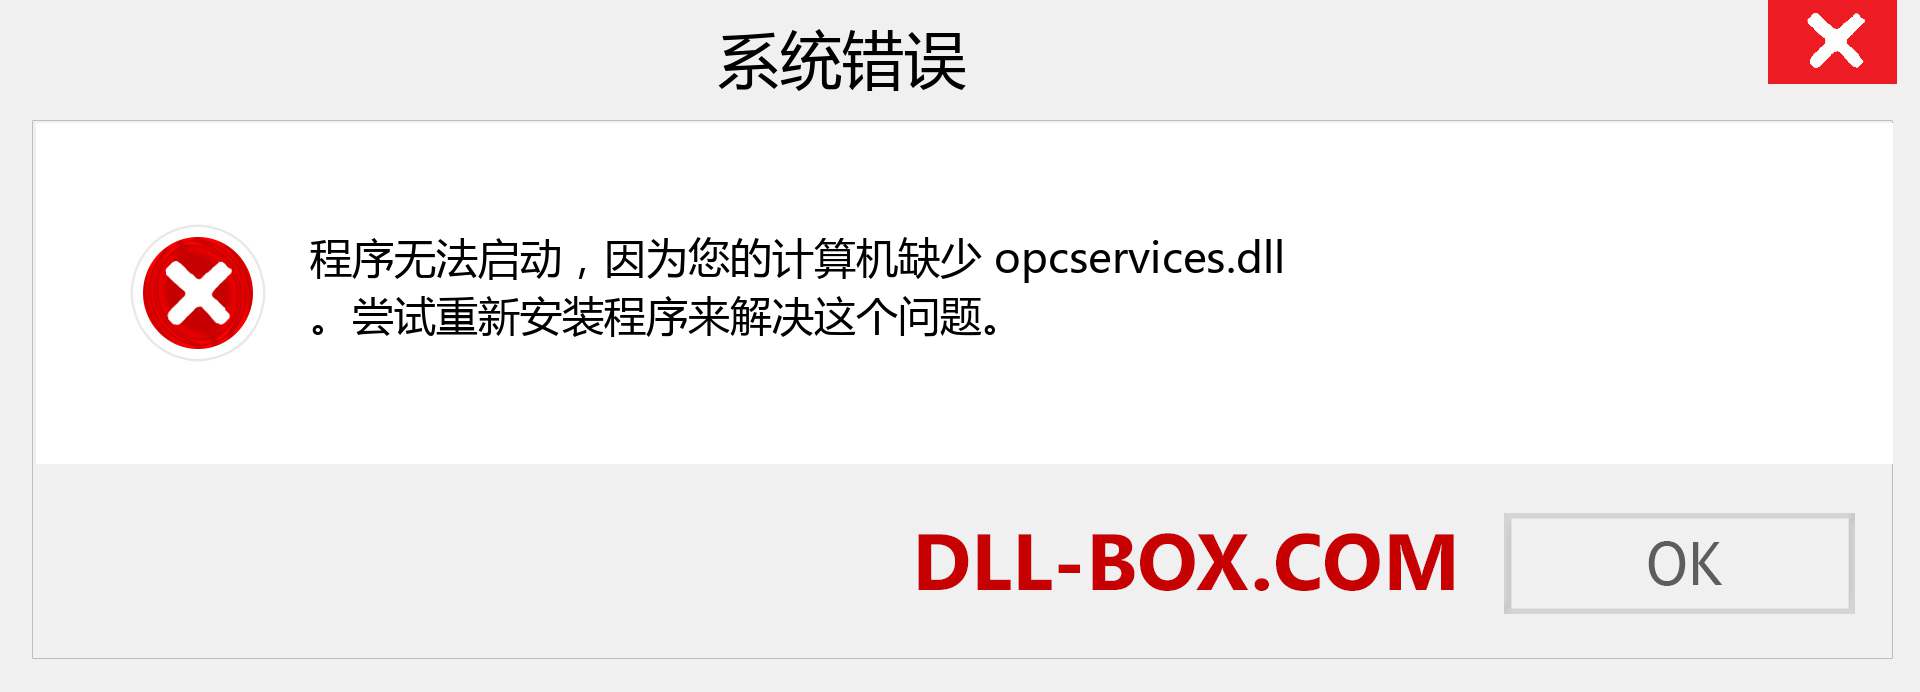 opcservices.dll 文件丢失？。 适用于 Windows 7、8、10 的下载 - 修复 Windows、照片、图像上的 opcservices dll 丢失错误